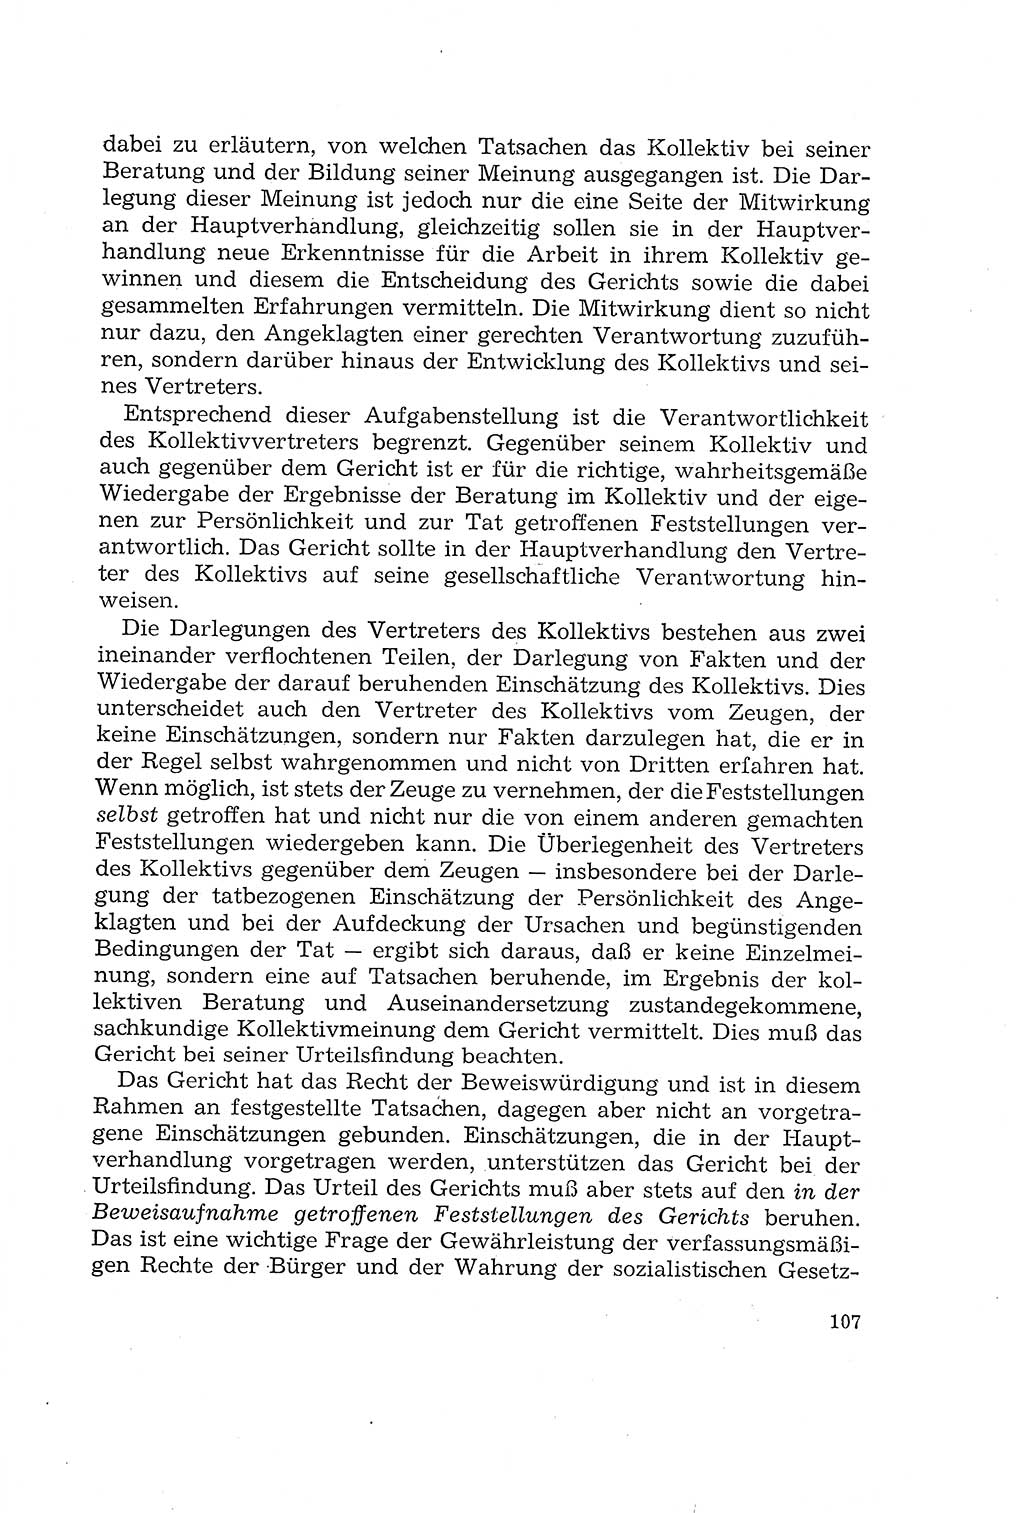 Die Mitwirkung der Werktätigen am Strafverfahren [Deutsche Demokratische Republik (DDR)] 1966, Seite 107 (Mitw. Str.-Verf. DDR 1966, S. 107)